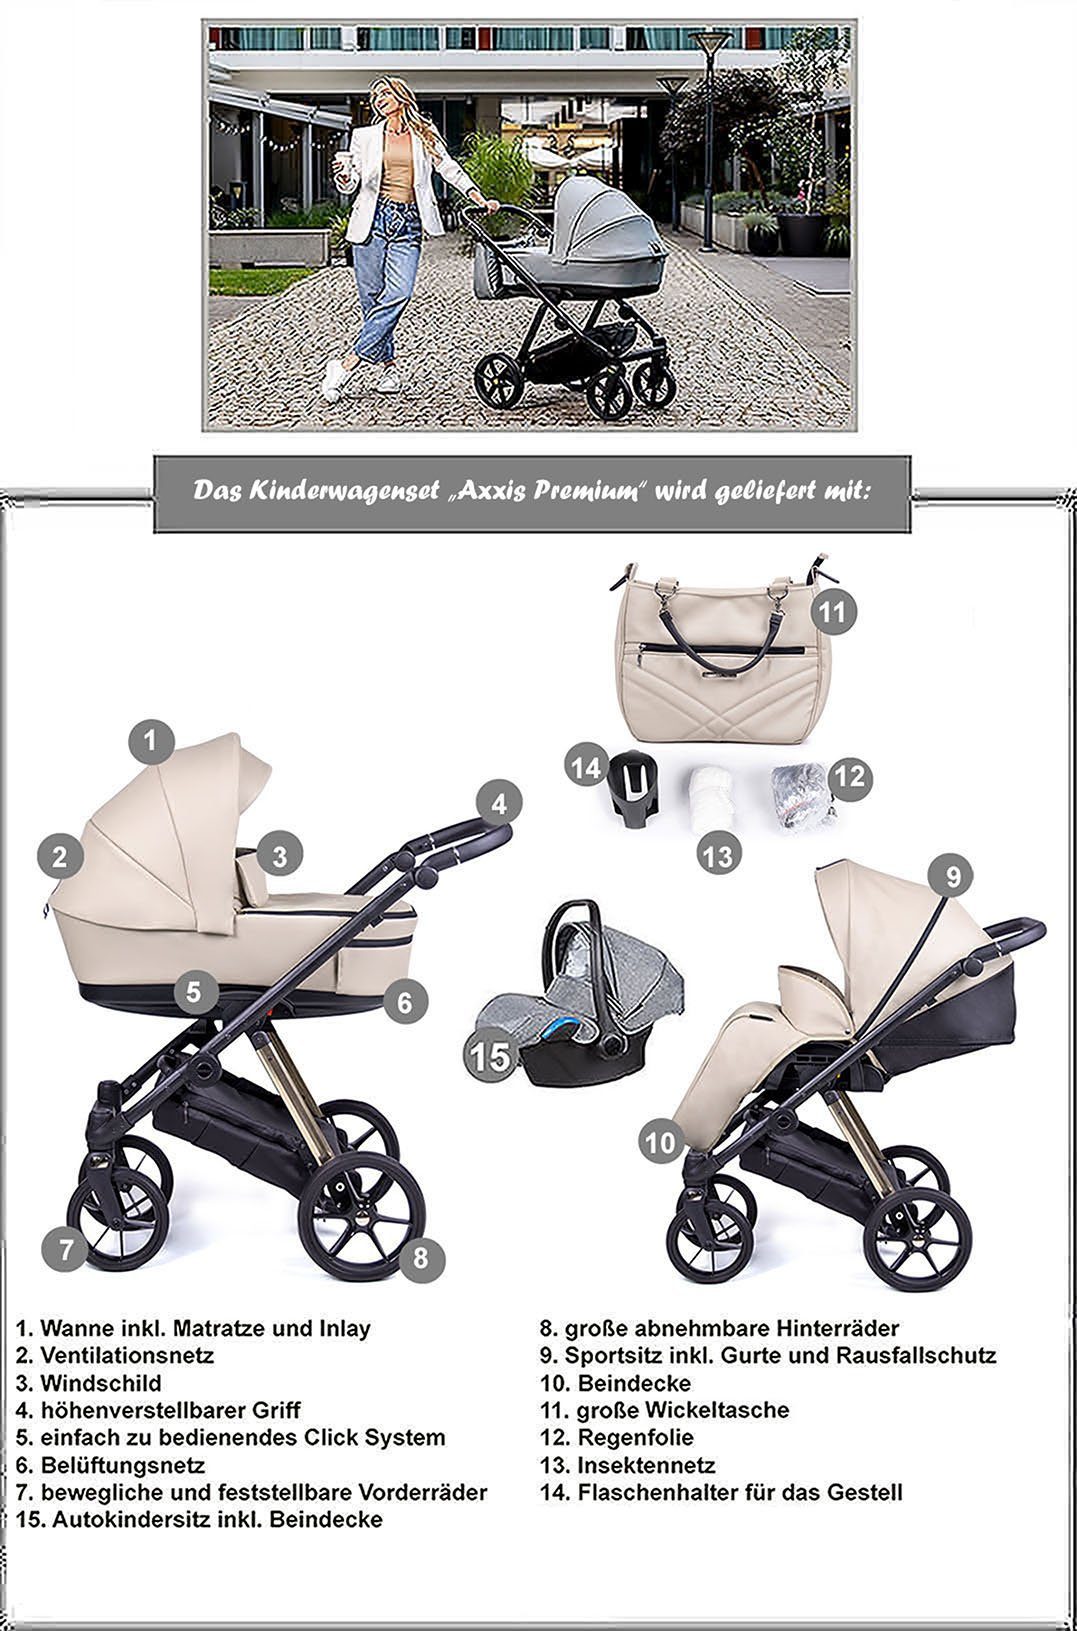 1 in Teile babies-on-wheels - Kinderwagen-Set Premium Designs 12 Braun 3 Axxis in - 15 schwarz Gestell = Kombi-Kinderwagen